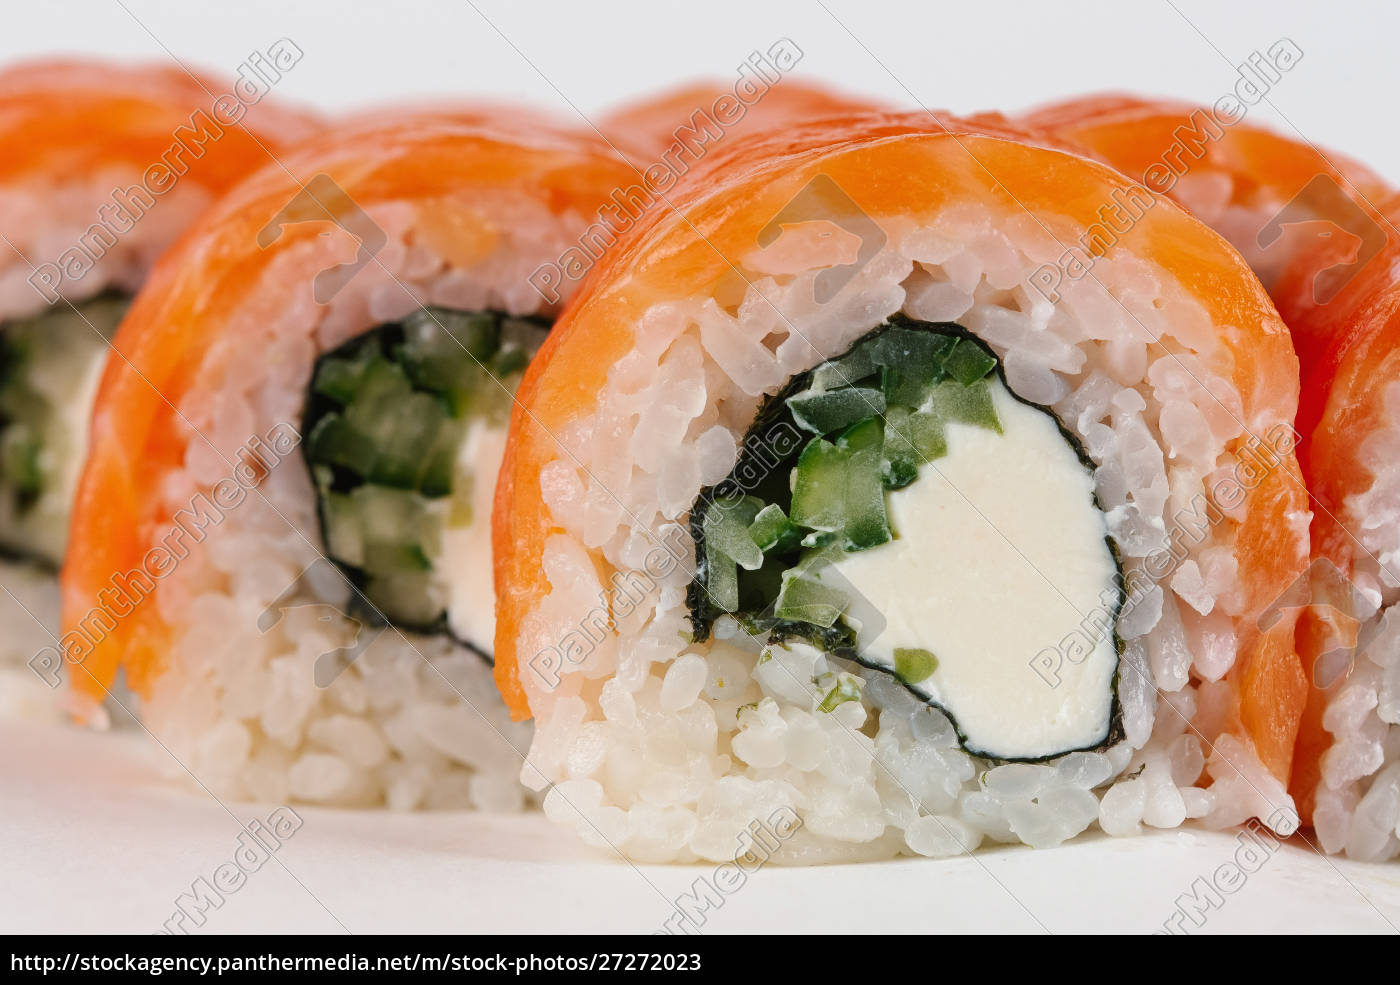 Sushi mit Lachs und Frischkäse - Lizenzfreies Bild - #27272023 ...